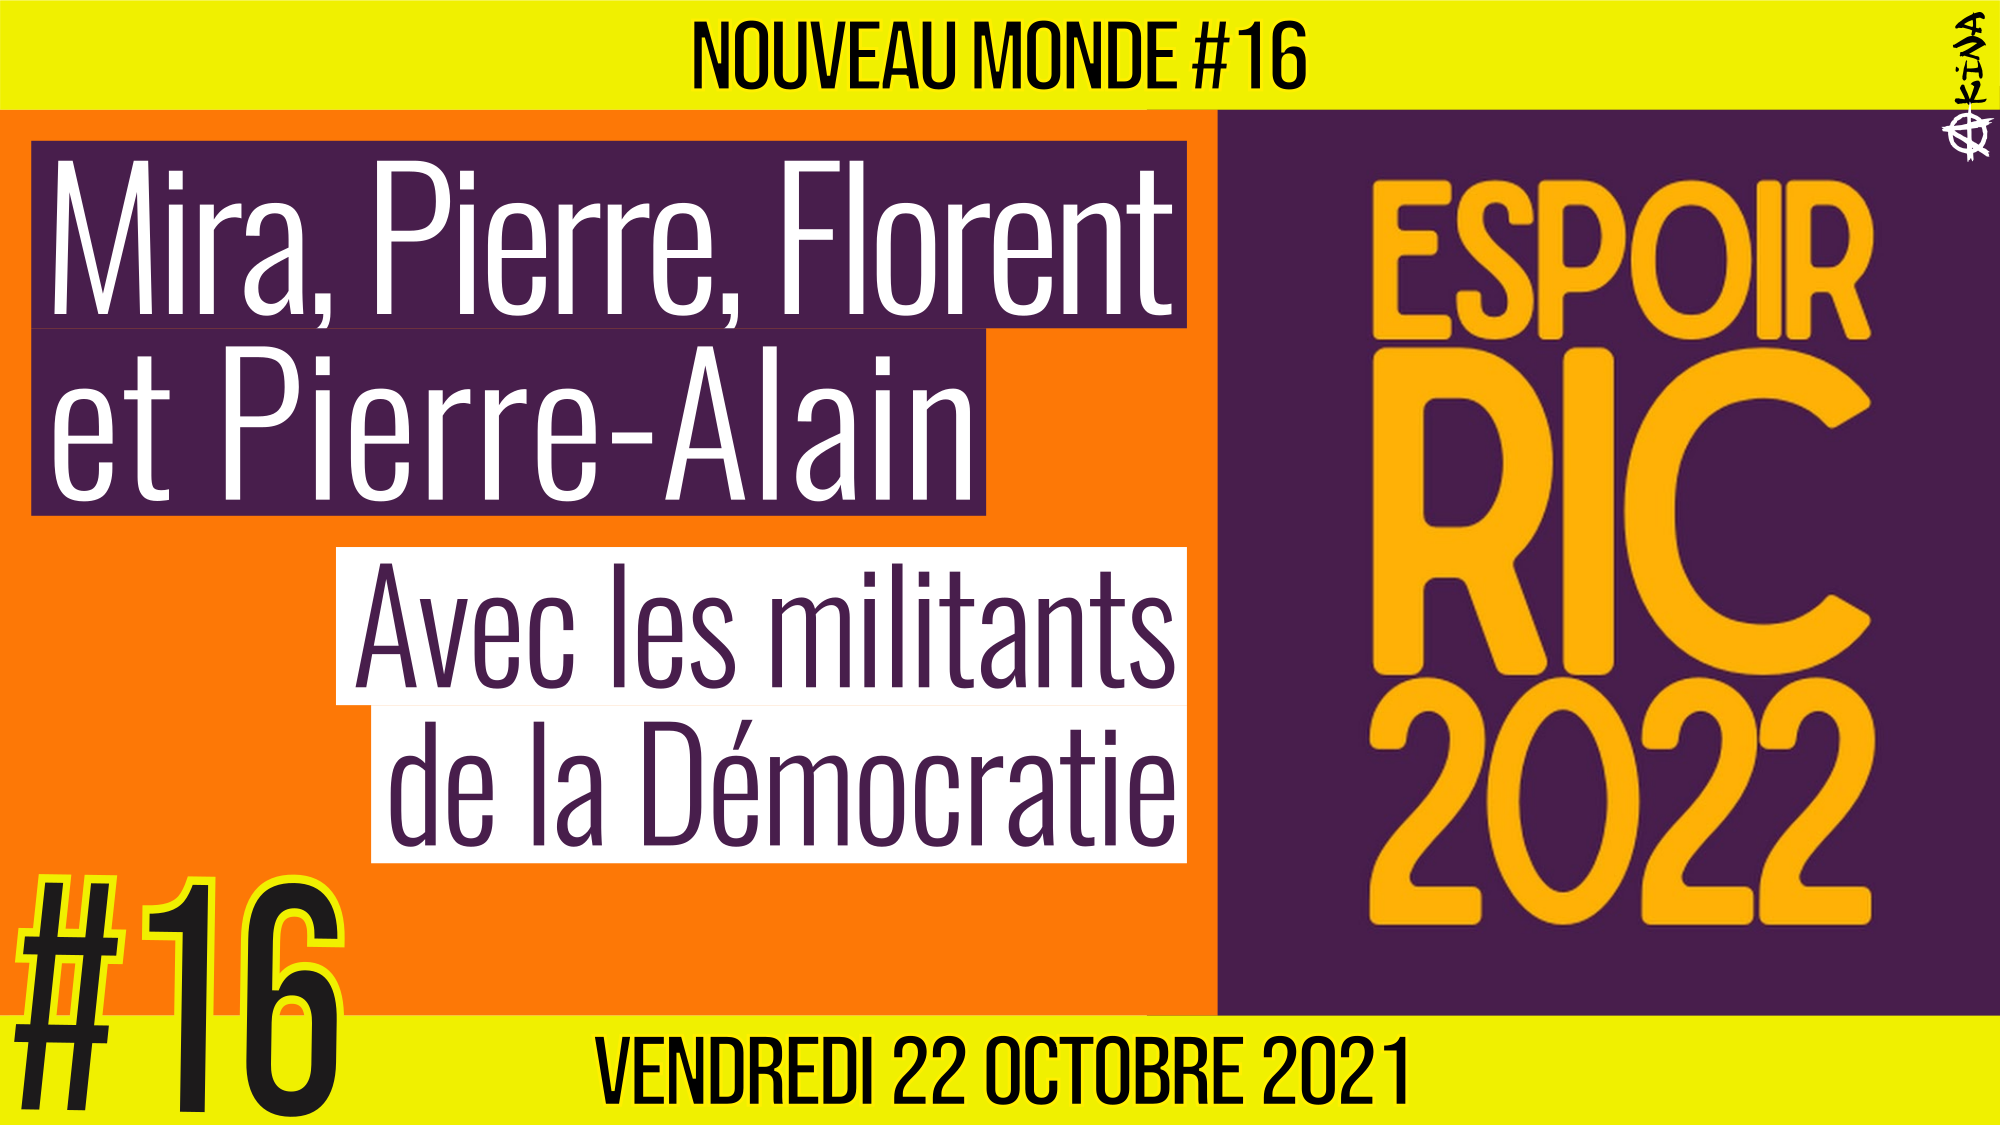 🌅 NOUVEAU MONDE #16 🔑 Mouvement ESPOIR RIC 2022 🗣 4 membres actifs : Mira, Pierre, Florent, Pierre-Alain 📆 22-10-2021